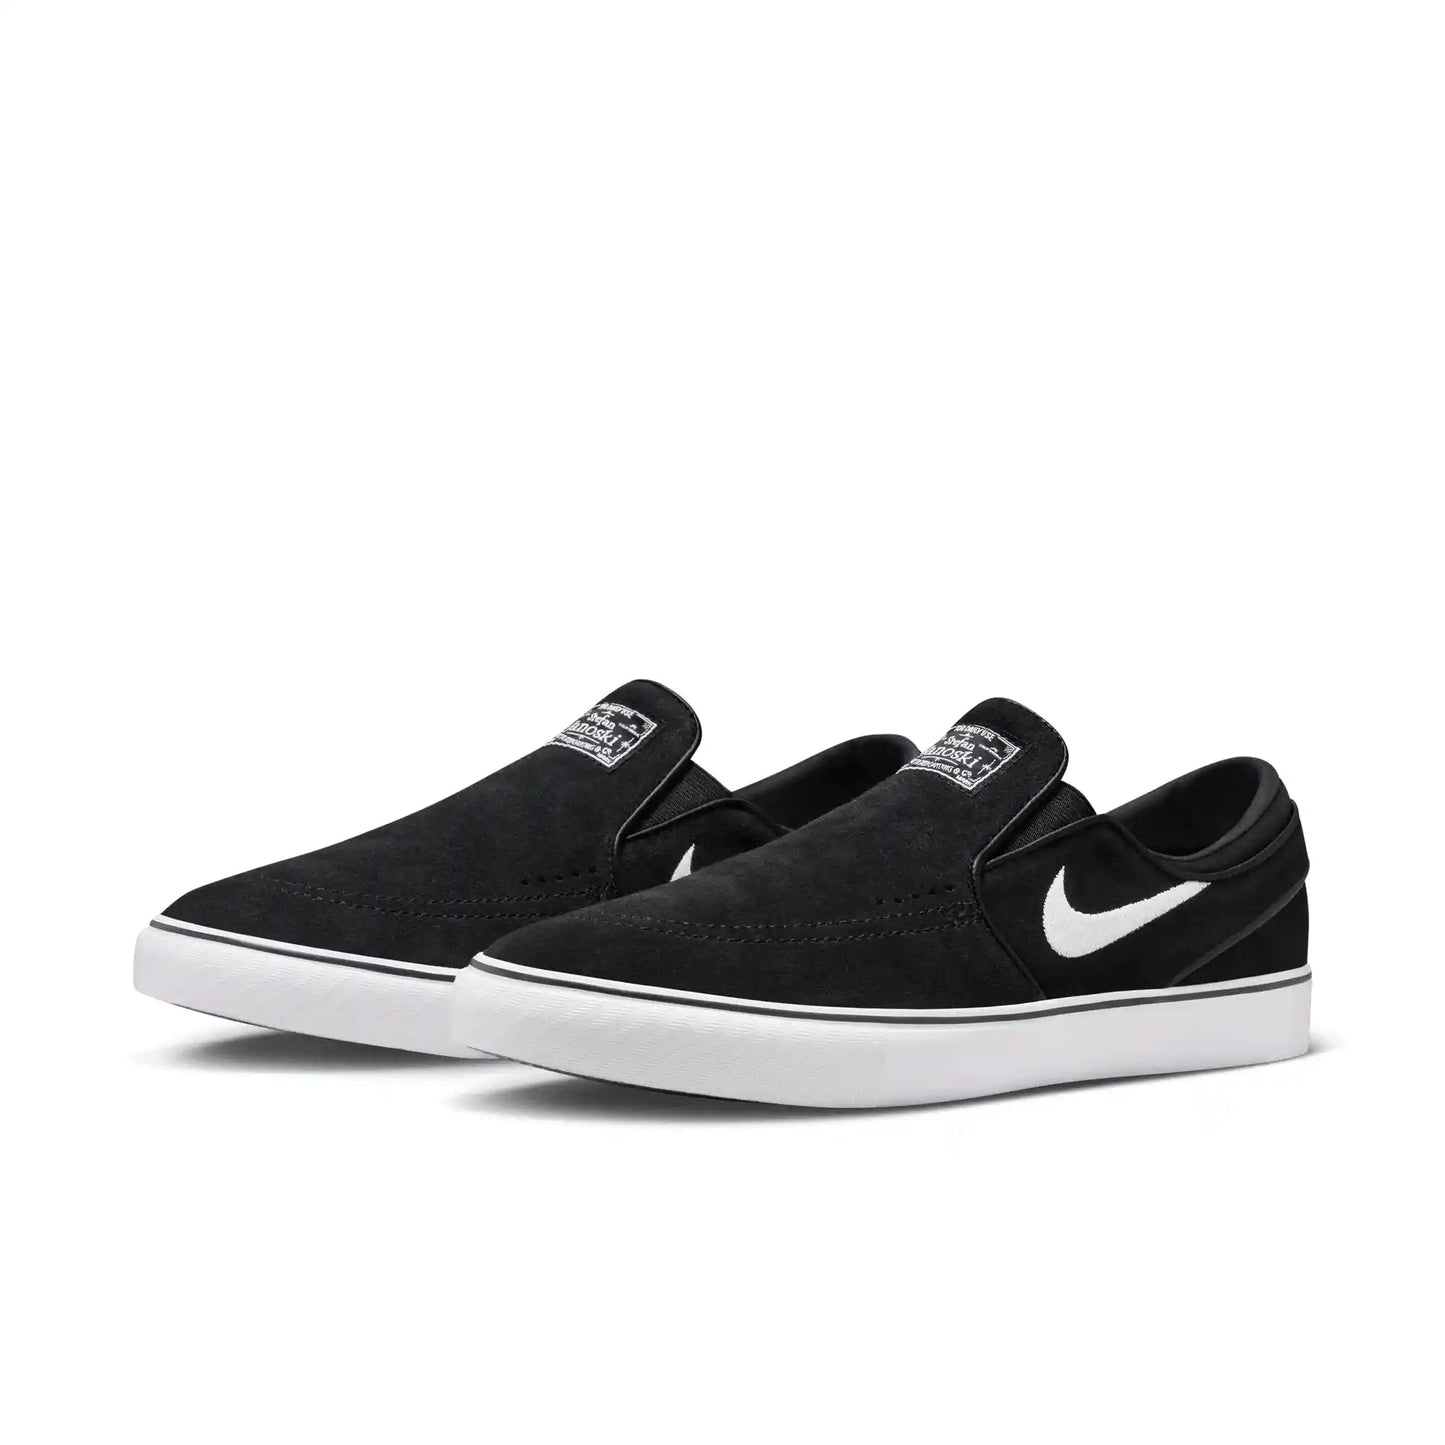 Nike SB Janoski+ Slip, black/white-black-black - Tiki Room Skateboards - 2